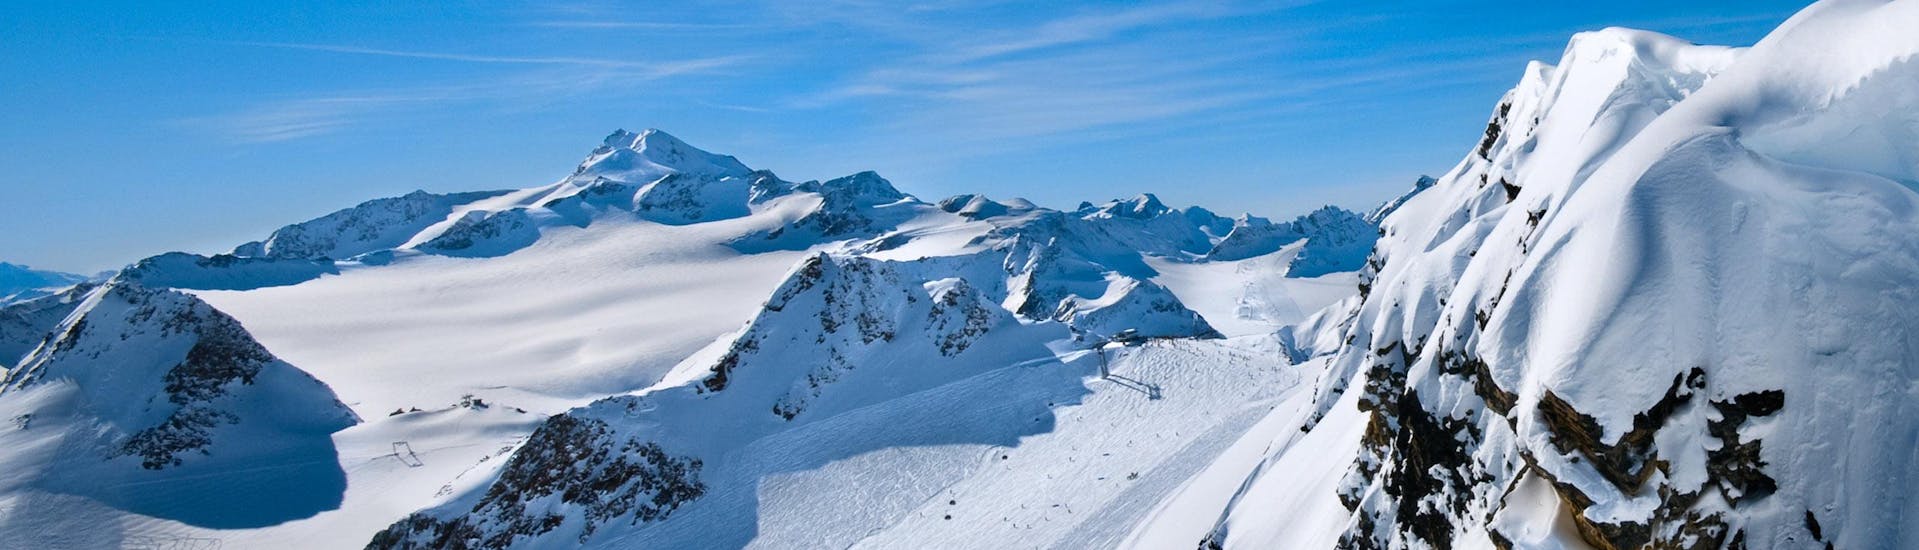 Ausblick auf die sonnige Berglandschaft beim Skifahren lernen mit einer Skischule im Skigebiet Ötztal.